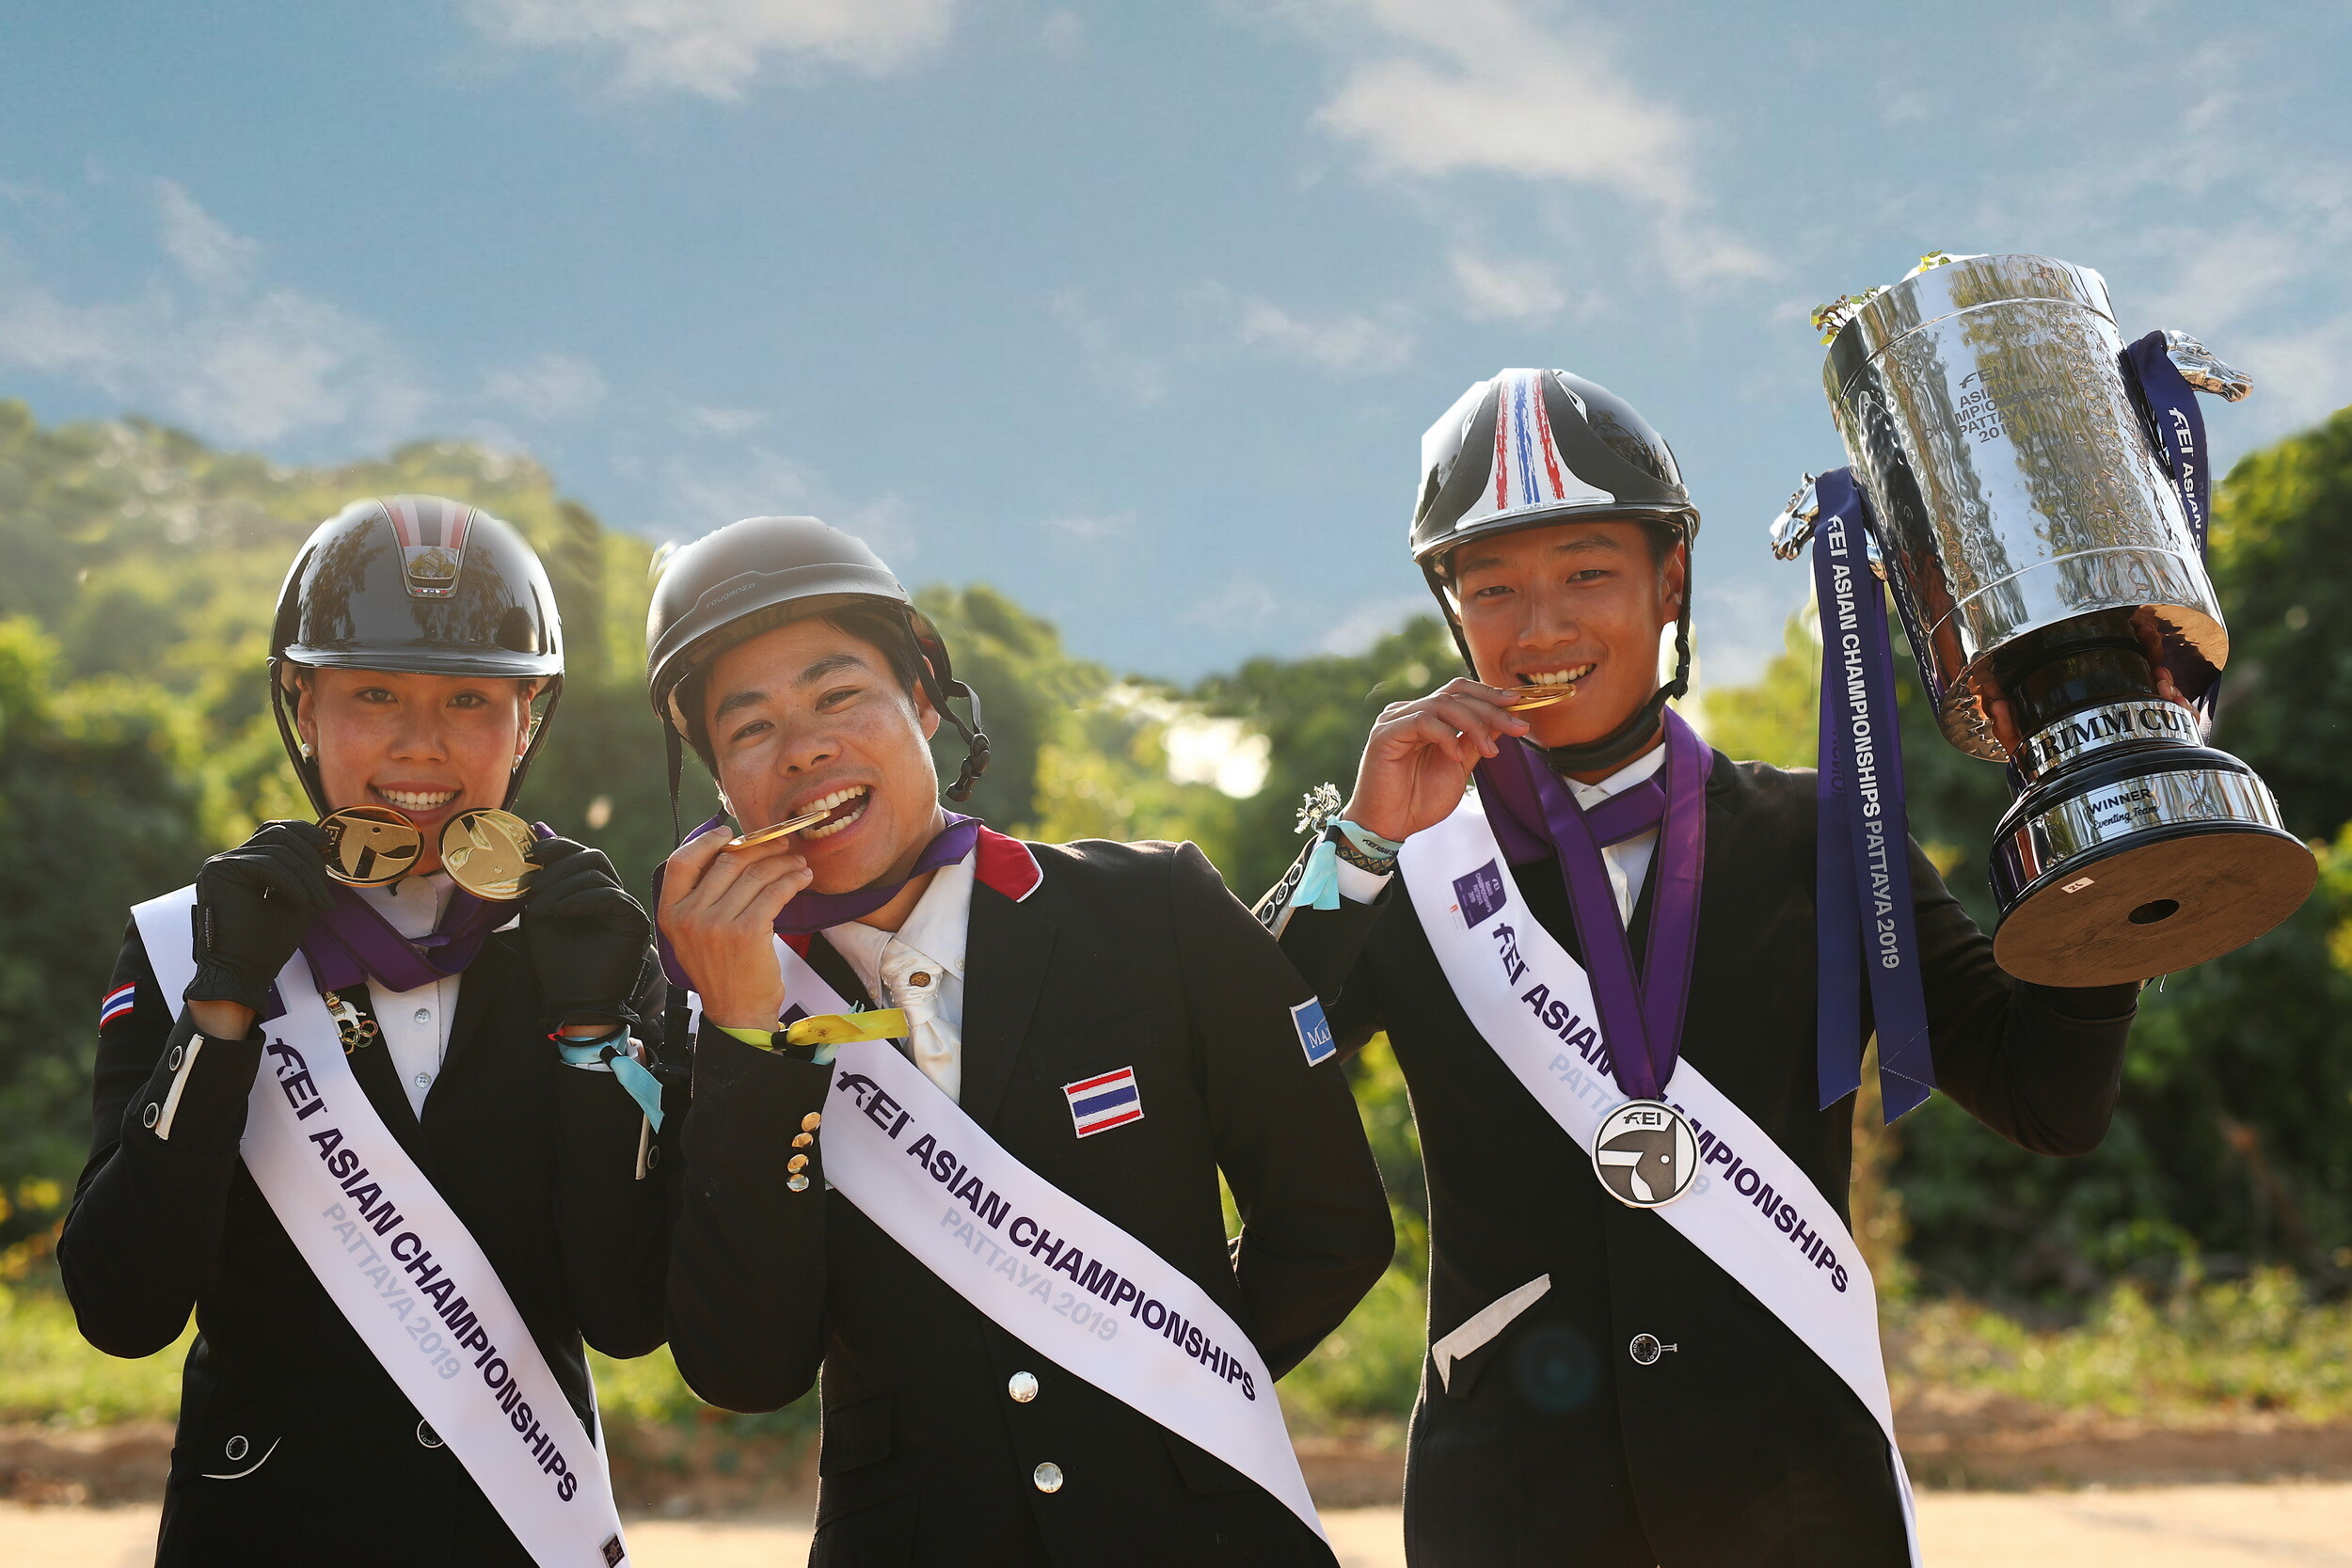 ทีมนักกีฬาขี่ม้าไทย สร้างประวัติศาสตร์ คว้าสิทธิ์ลุย "โตเกียว โอลิมปิก"